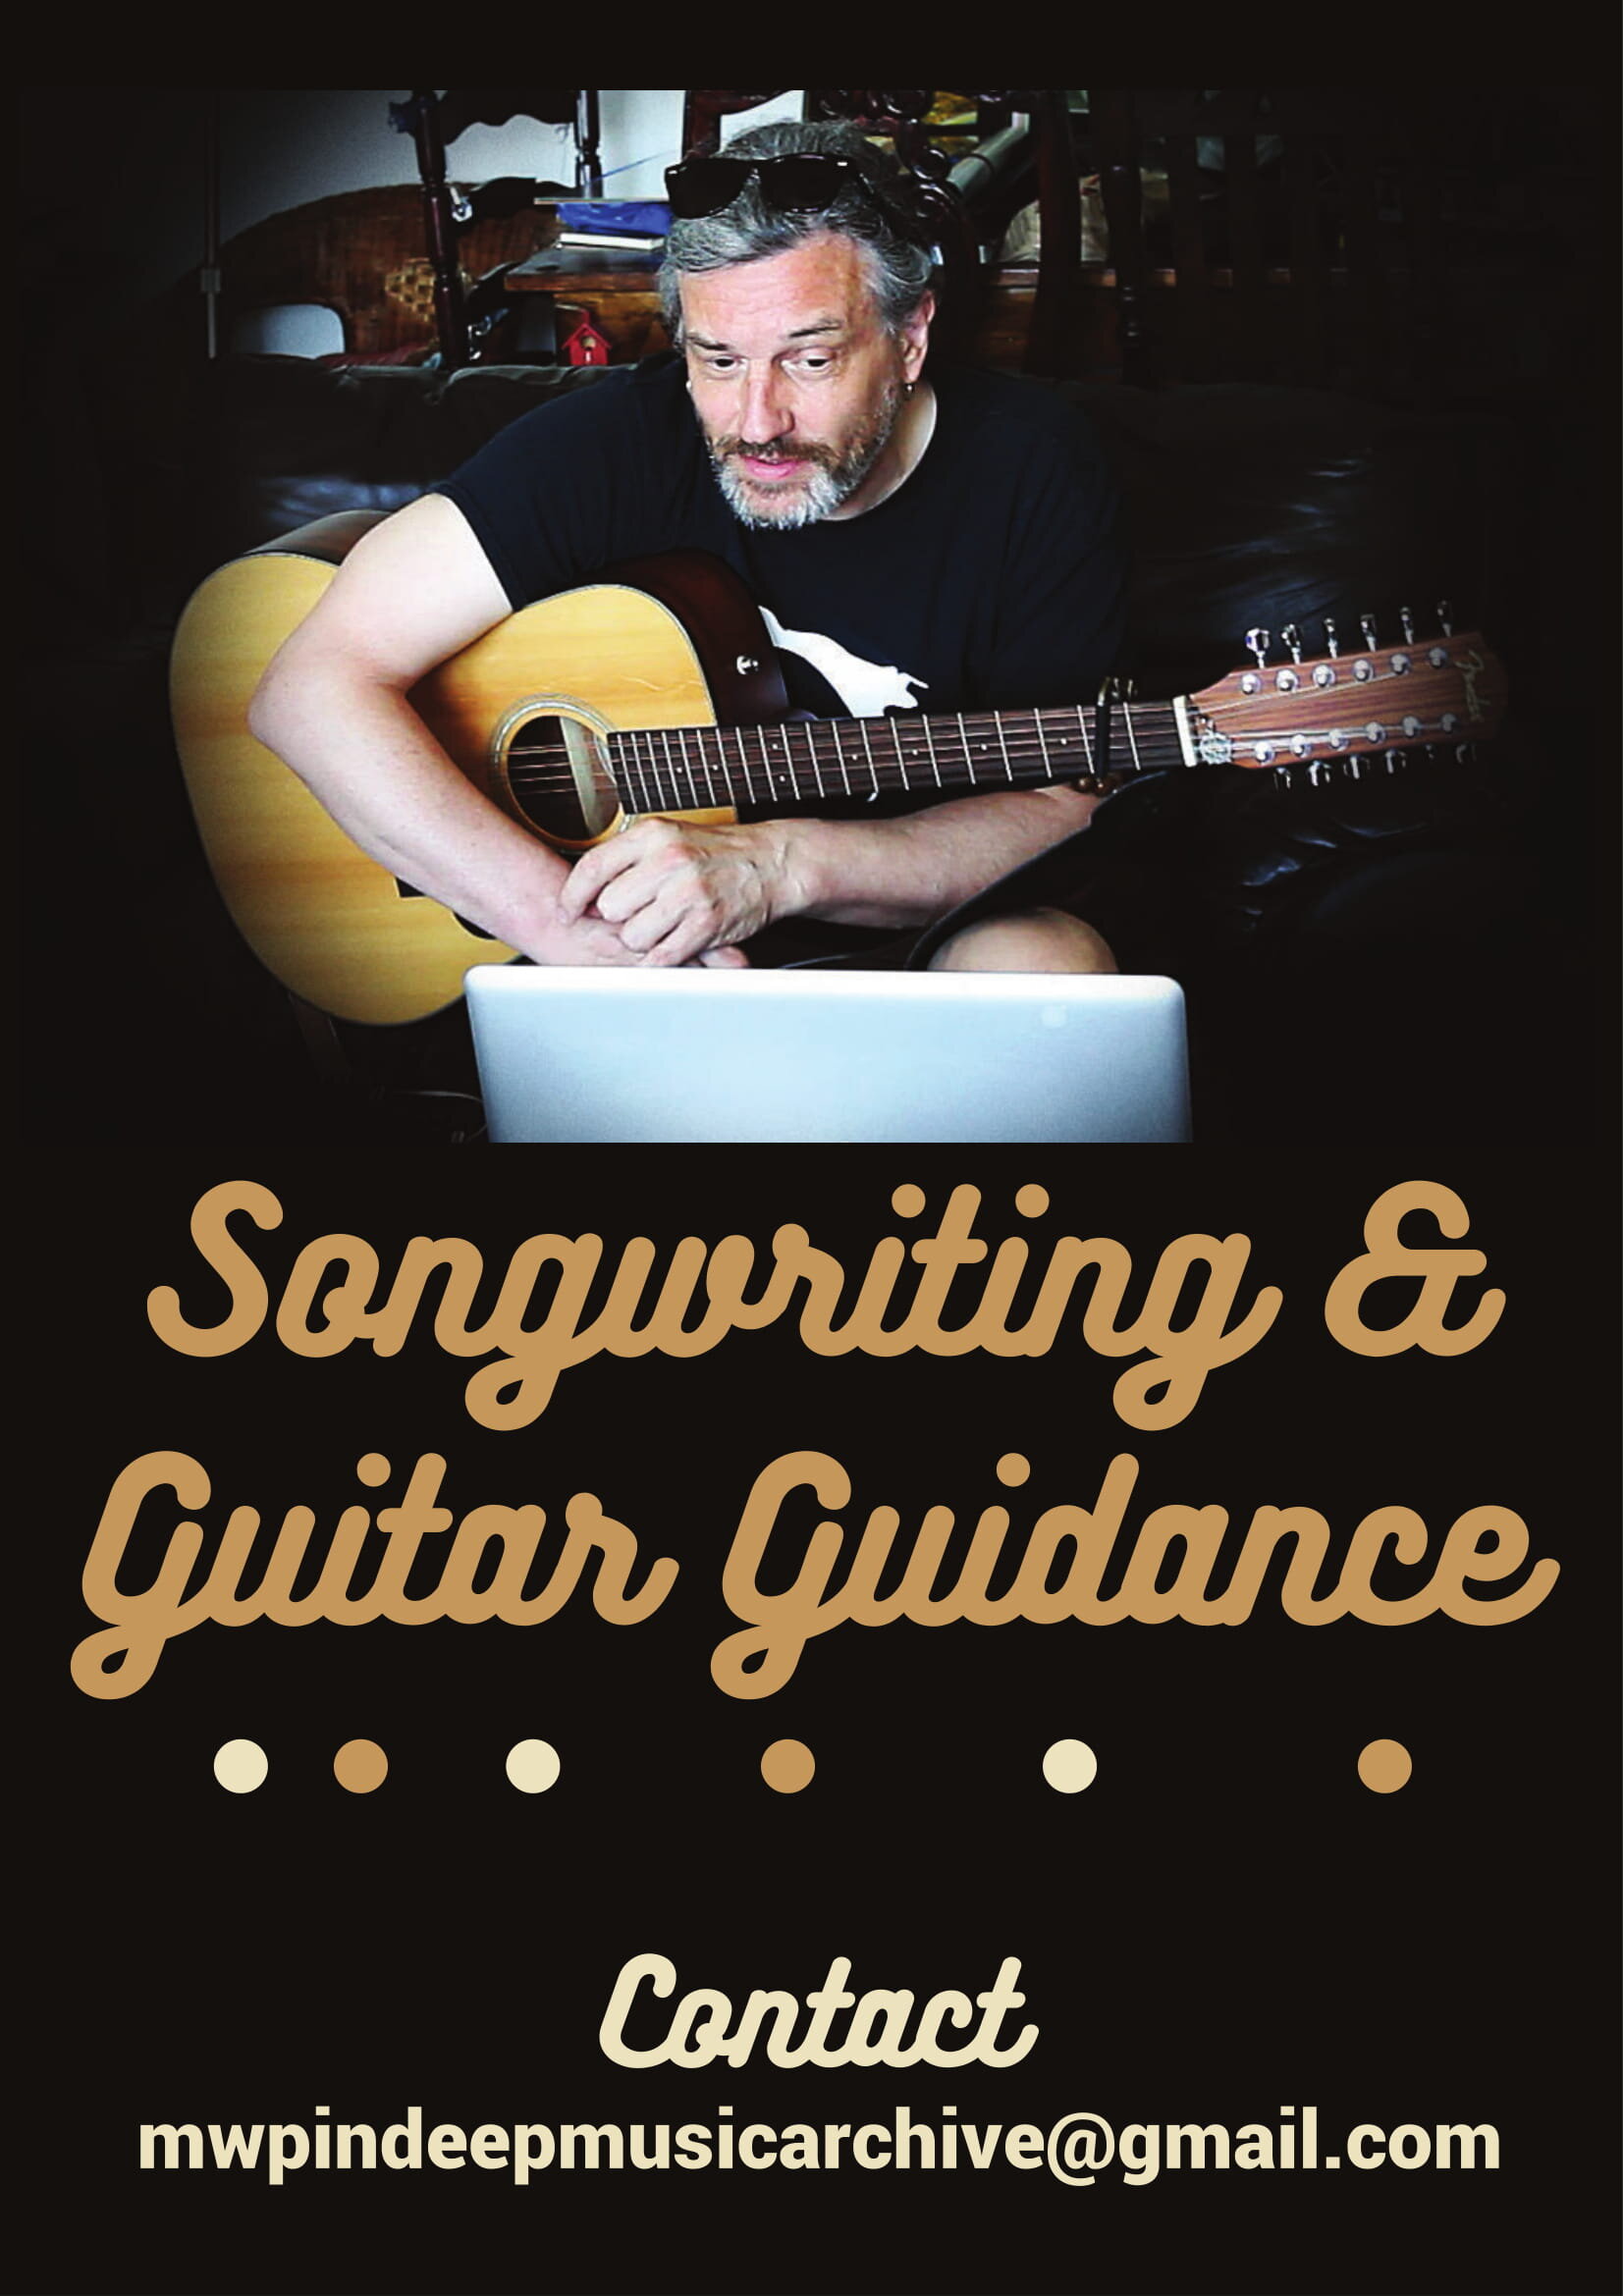 Guitar Guidance Flyer-1.jpg